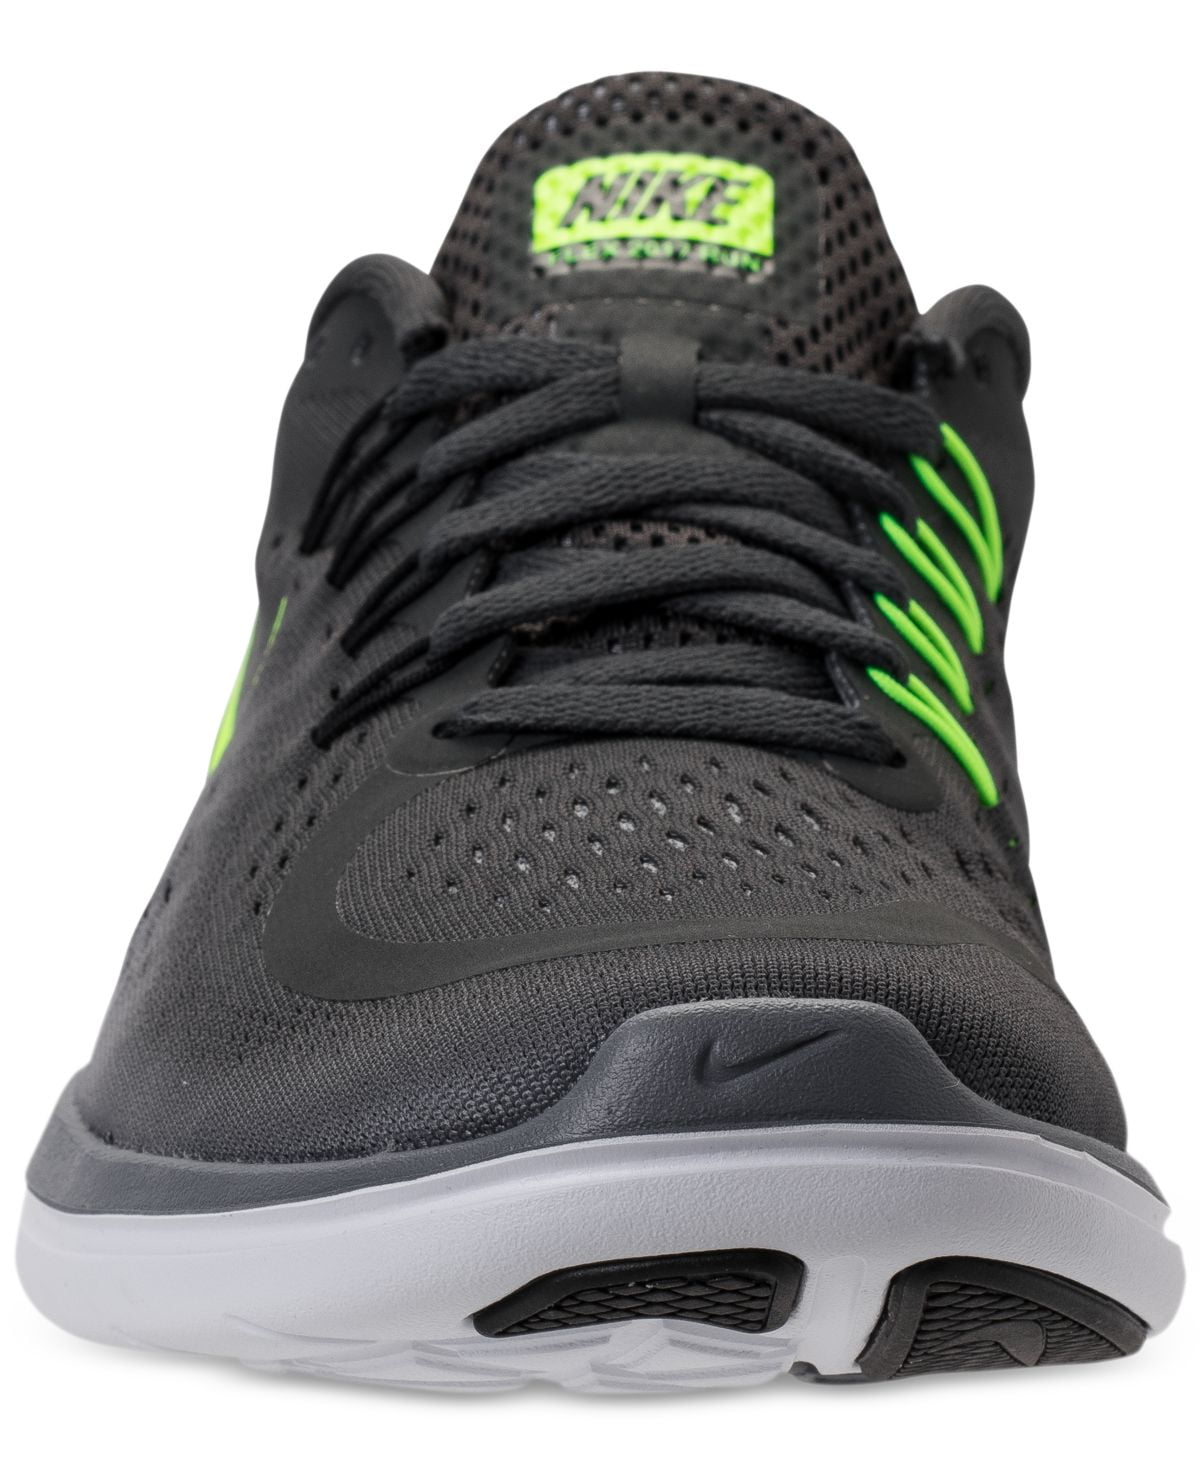 men's flex 2017 rn running shoes (green, 9.5) - Walmart.com